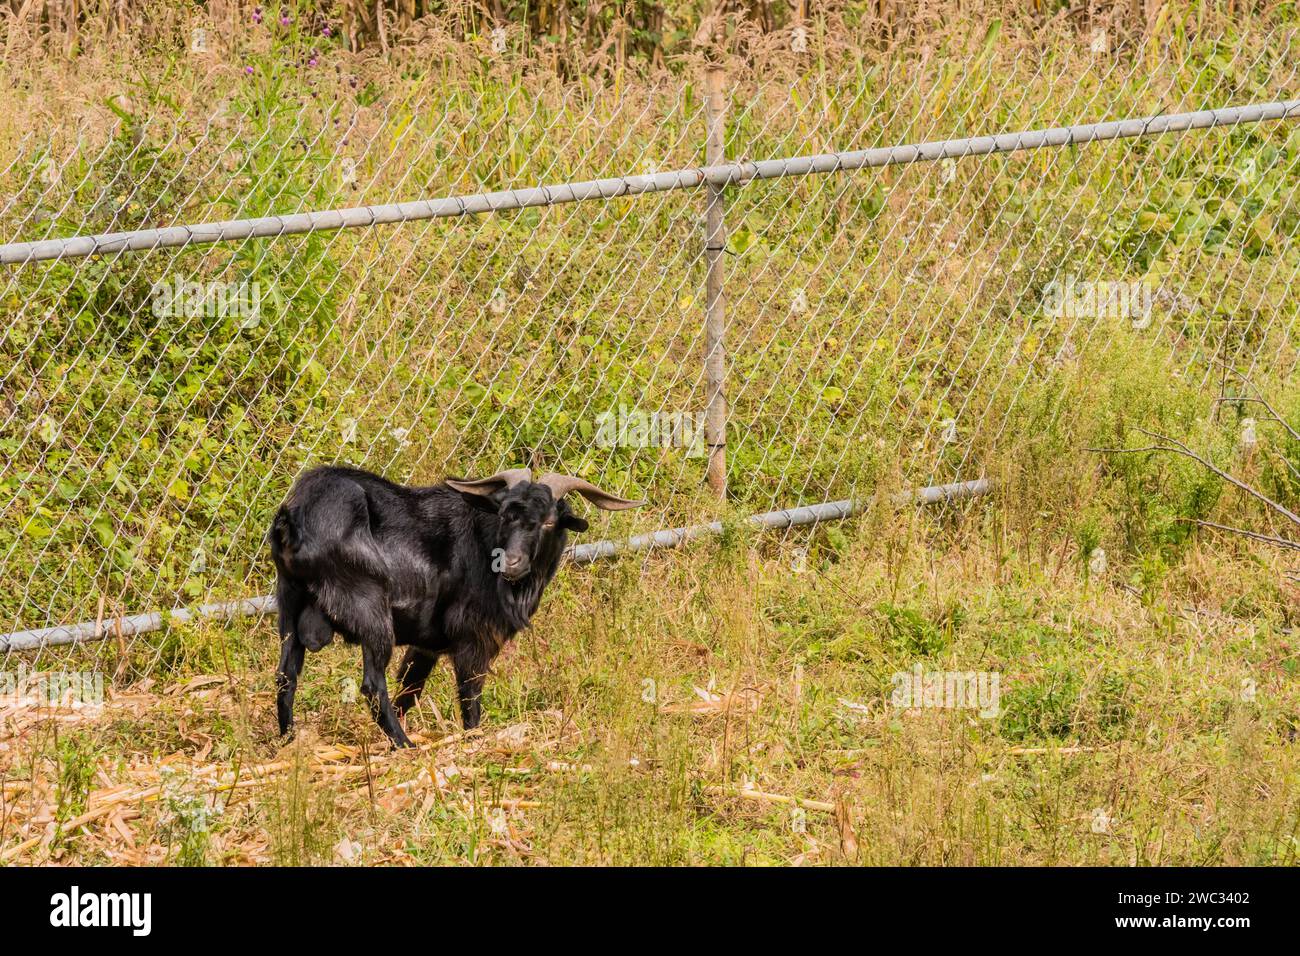 Primo piano di una grande capra nera con lunghe corna davanti alla recinzione a catena Foto Stock